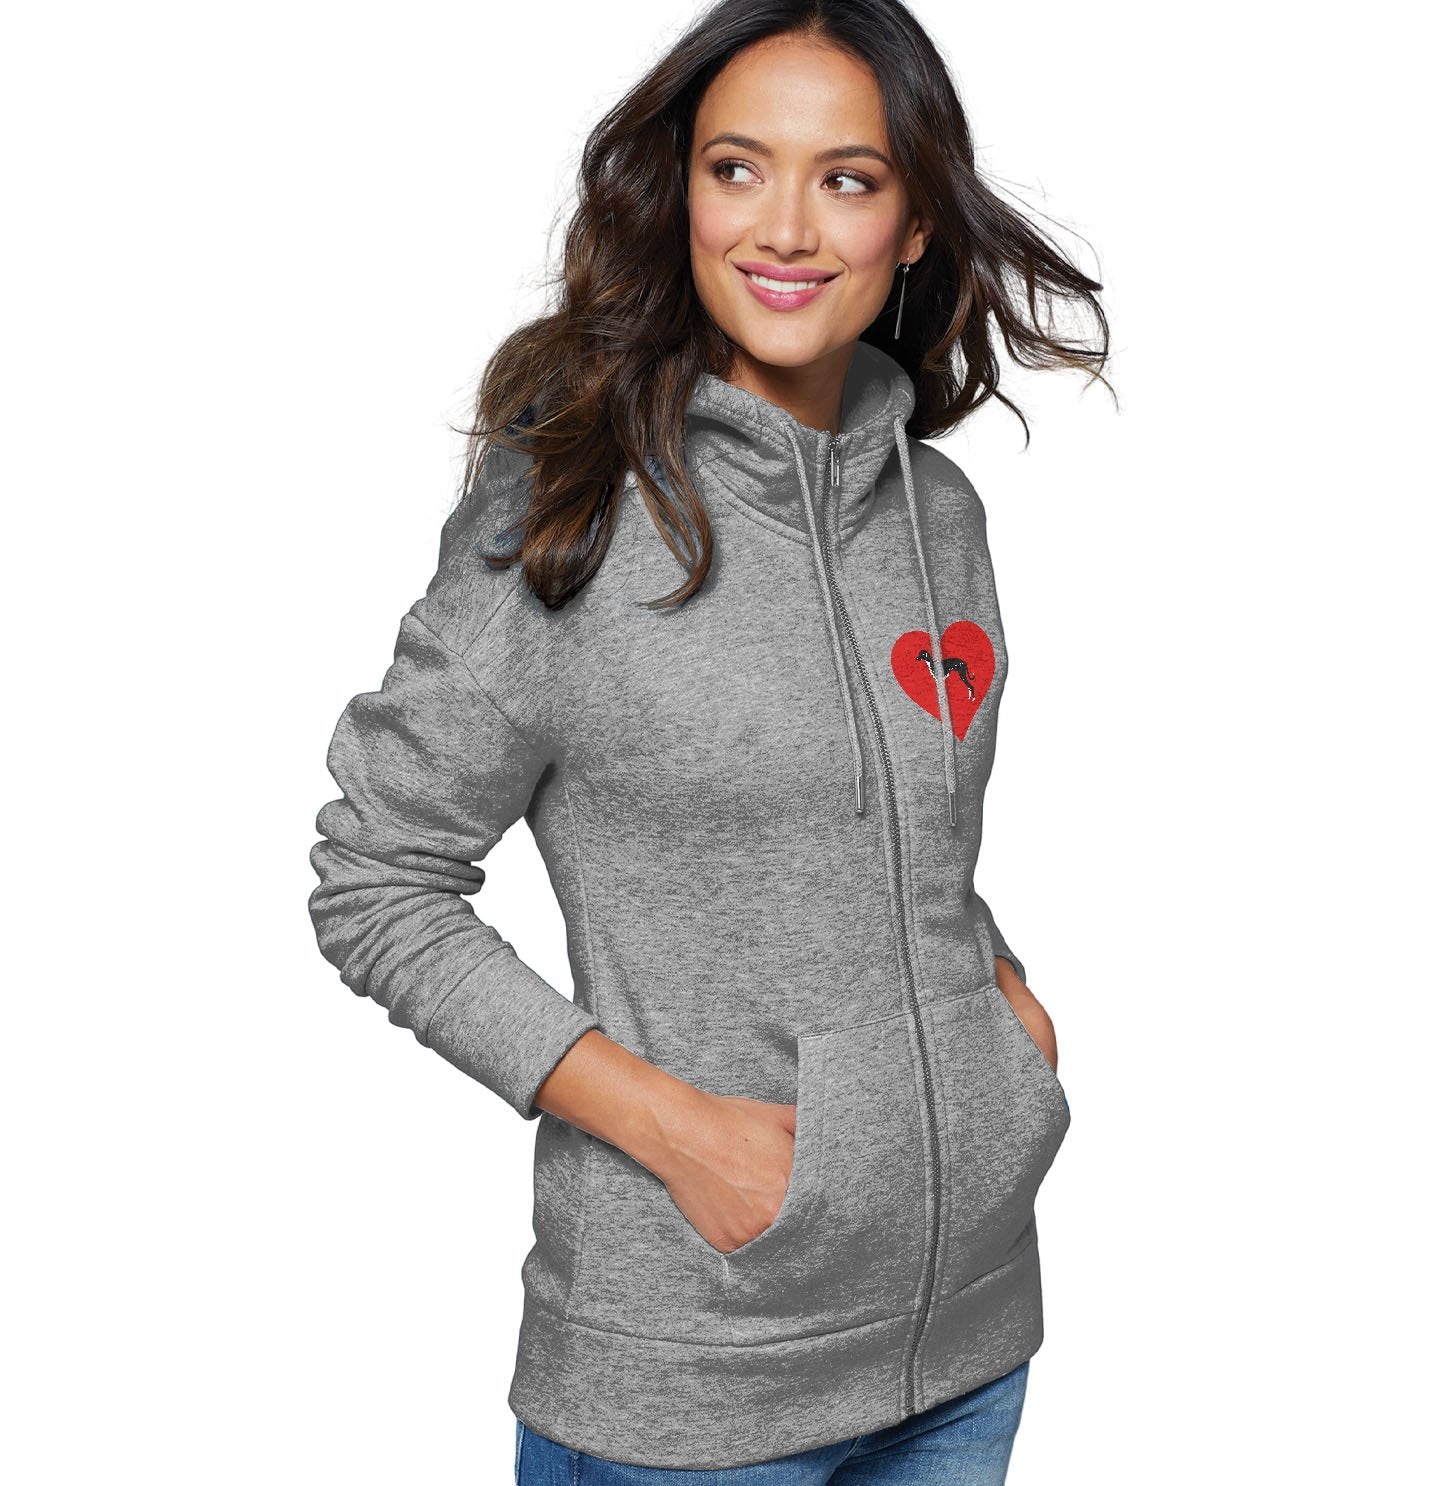 Azawakh on Heart Left Chest - Women's Full-Zip Hoodie Sweatshirt